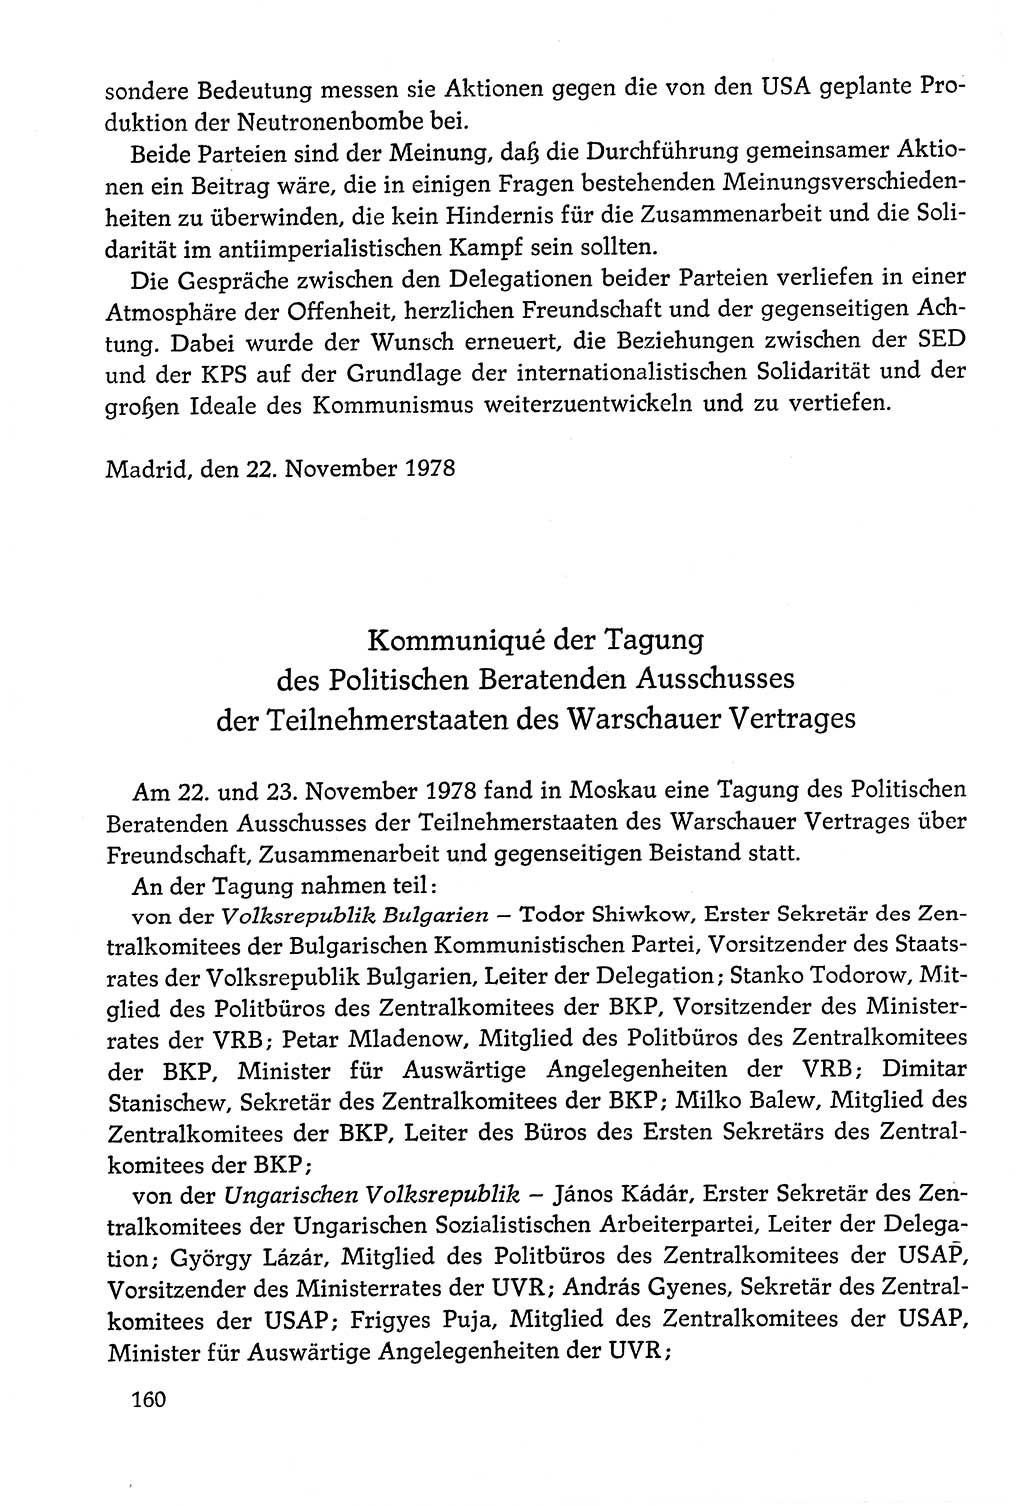 Dokumente der Sozialistischen Einheitspartei Deutschlands (SED) [Deutsche Demokratische Republik (DDR)] 1978-1979, Seite 160 (Dok. SED DDR 1978-1979, S. 160)